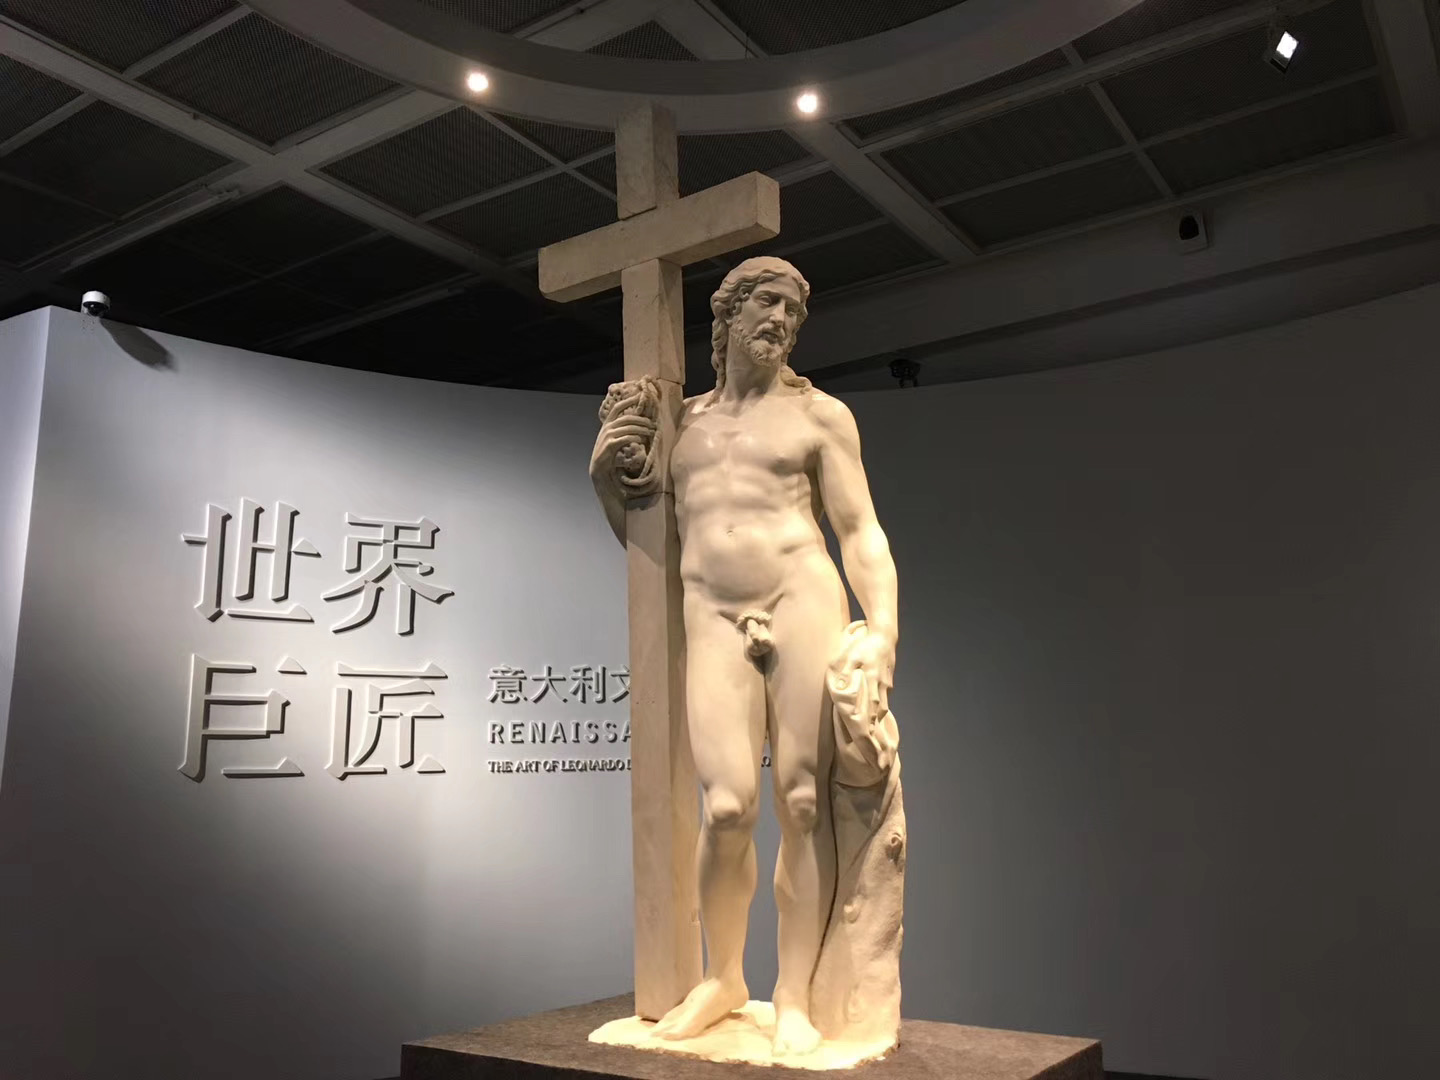 展览入门处矗立的雕塑，米开朗琪罗的“倚靠十字架的基督”。然鹅展览中没有“大卫”和“拉奥孔”的身影 Q_Q